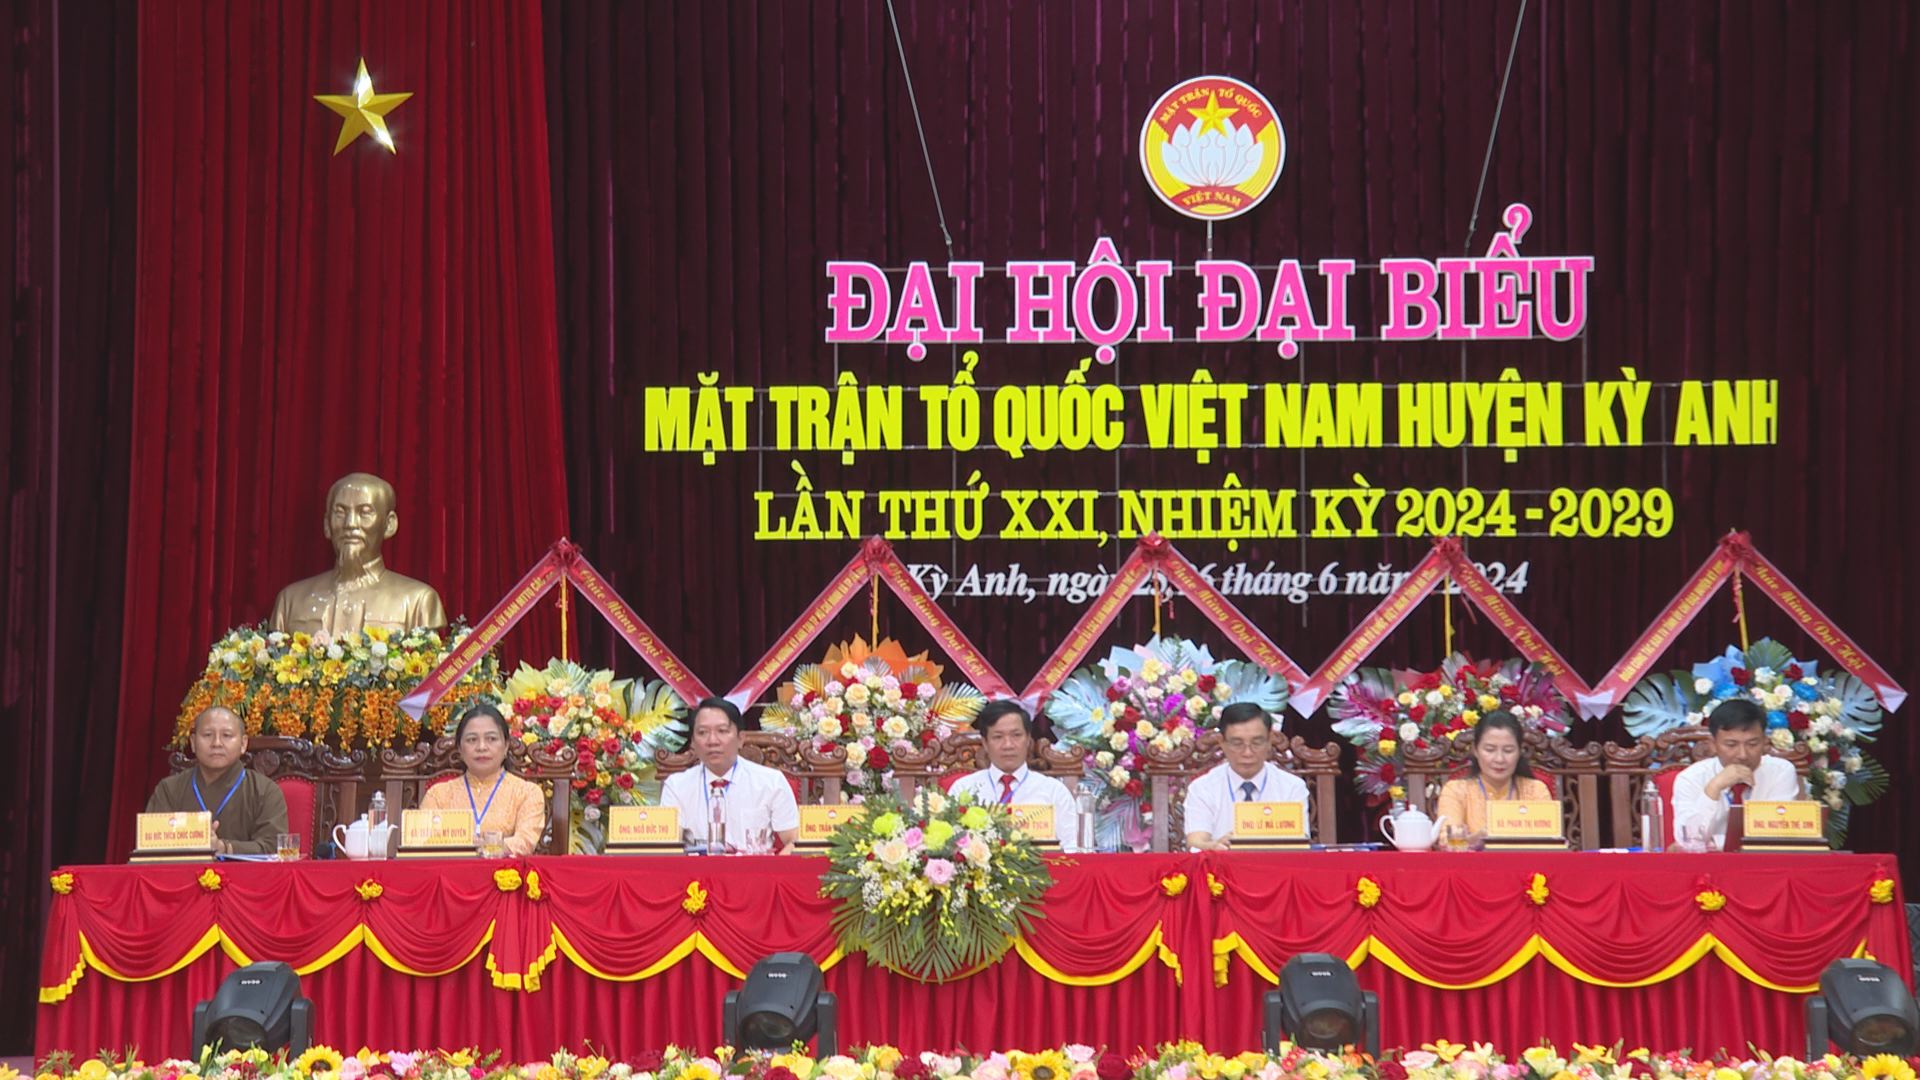 Phiên thứ Nhất Đại hội đại biểu MTTQ Việt Nam huyện Kỳ Anh lần thứ XXI, nhiệm kỳ 2024-2029